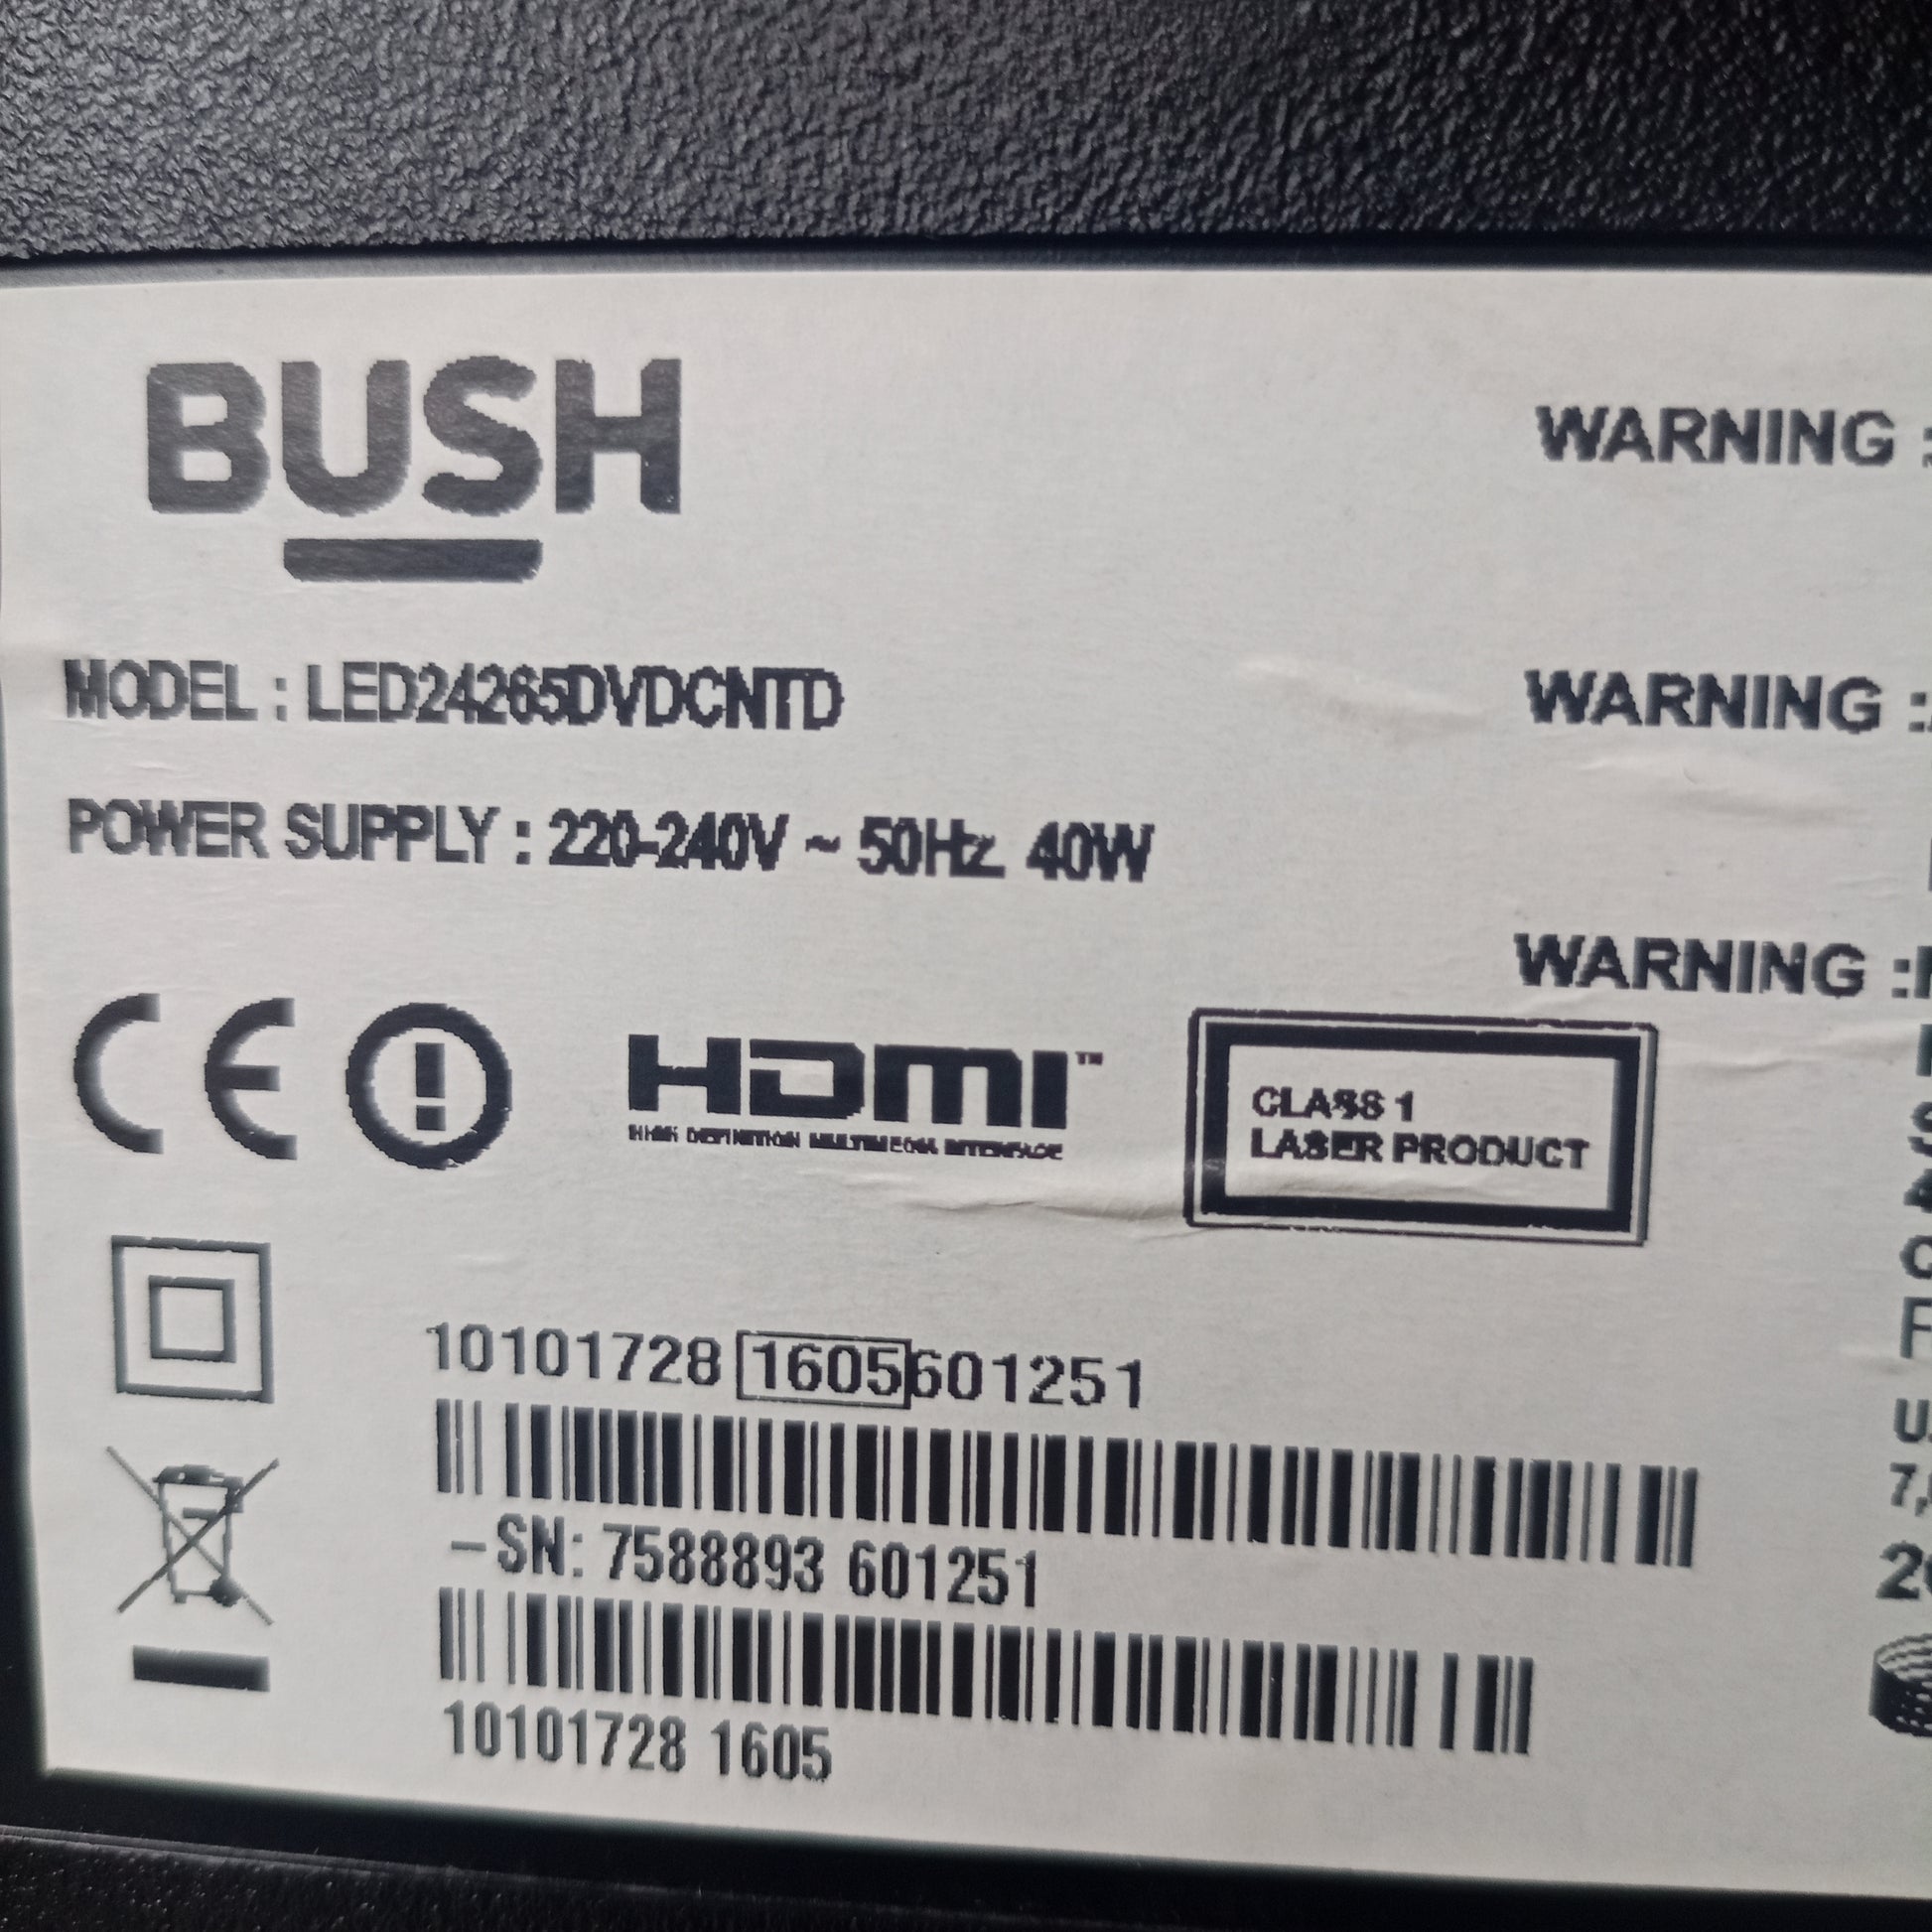 BUSH 24 Inch LED24265DVDCNTD Smart Full HD LED TV (DVD Combo) + Screen Mirroring, Netflix & YouTube - Model number sticker